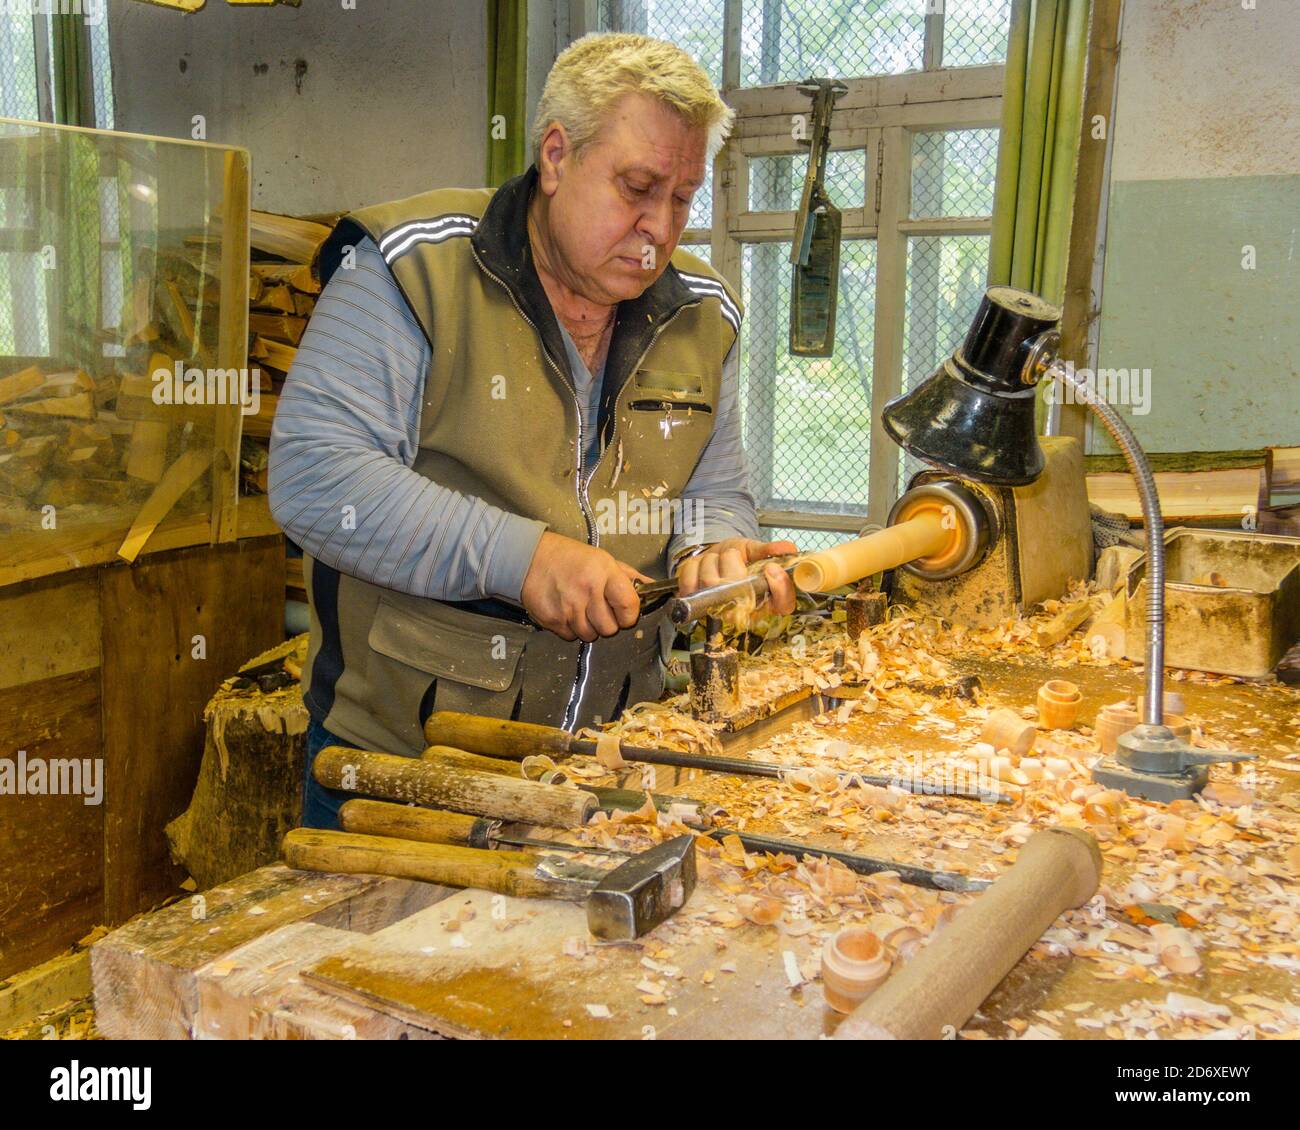 Holzwender schnitzt matrjoschka (russische hölzerne Nistpuppe) in der Werkstatt. Puppenherstellung Stockfoto